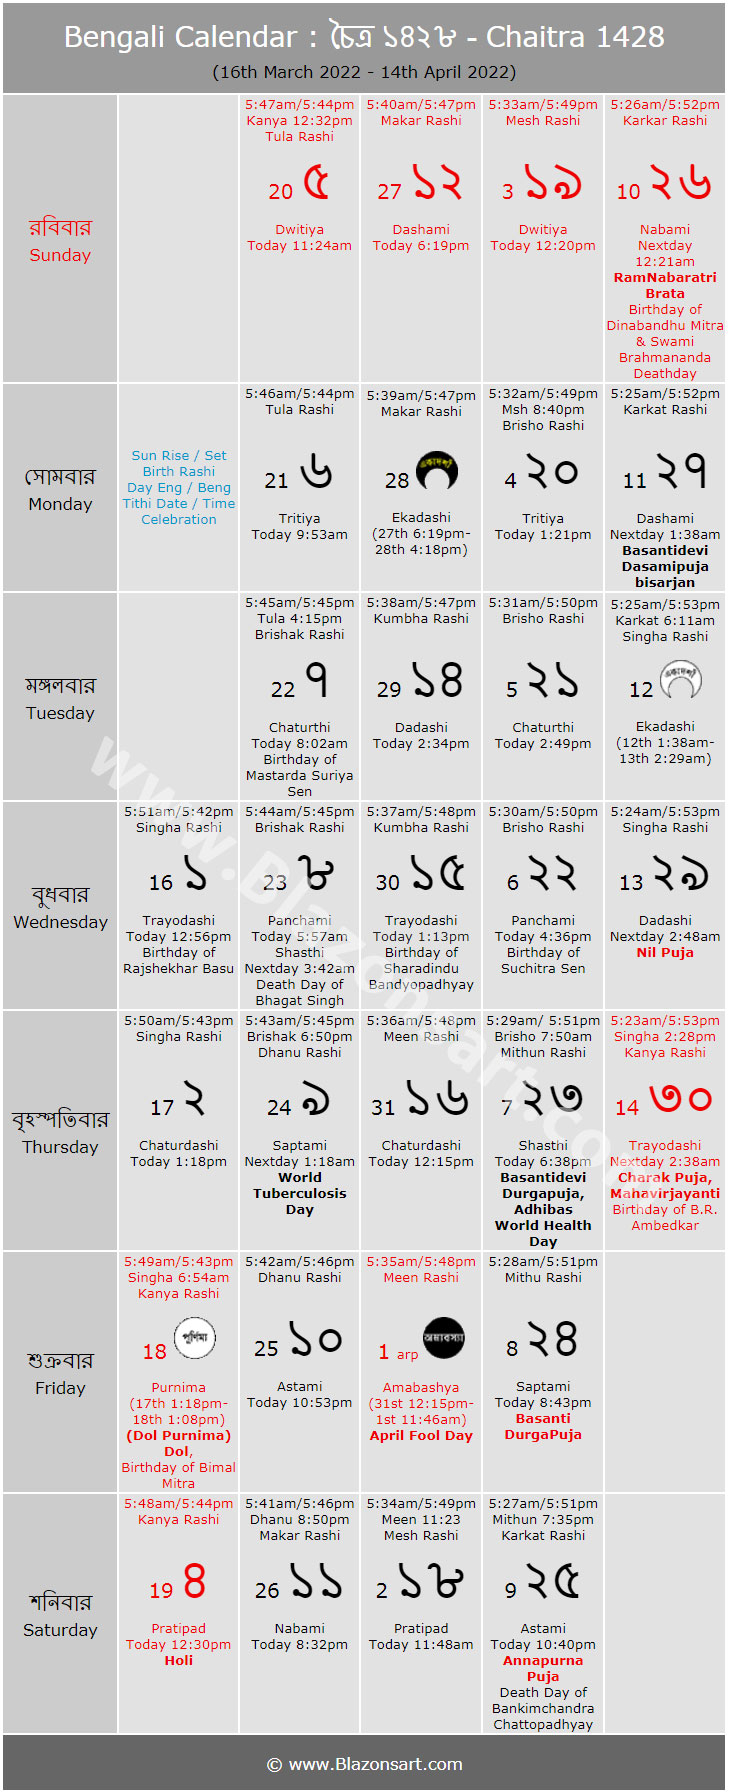 Bengali Calendar - Chaitra 1428 : বাংলা কালেন্ডার - চৈত্র